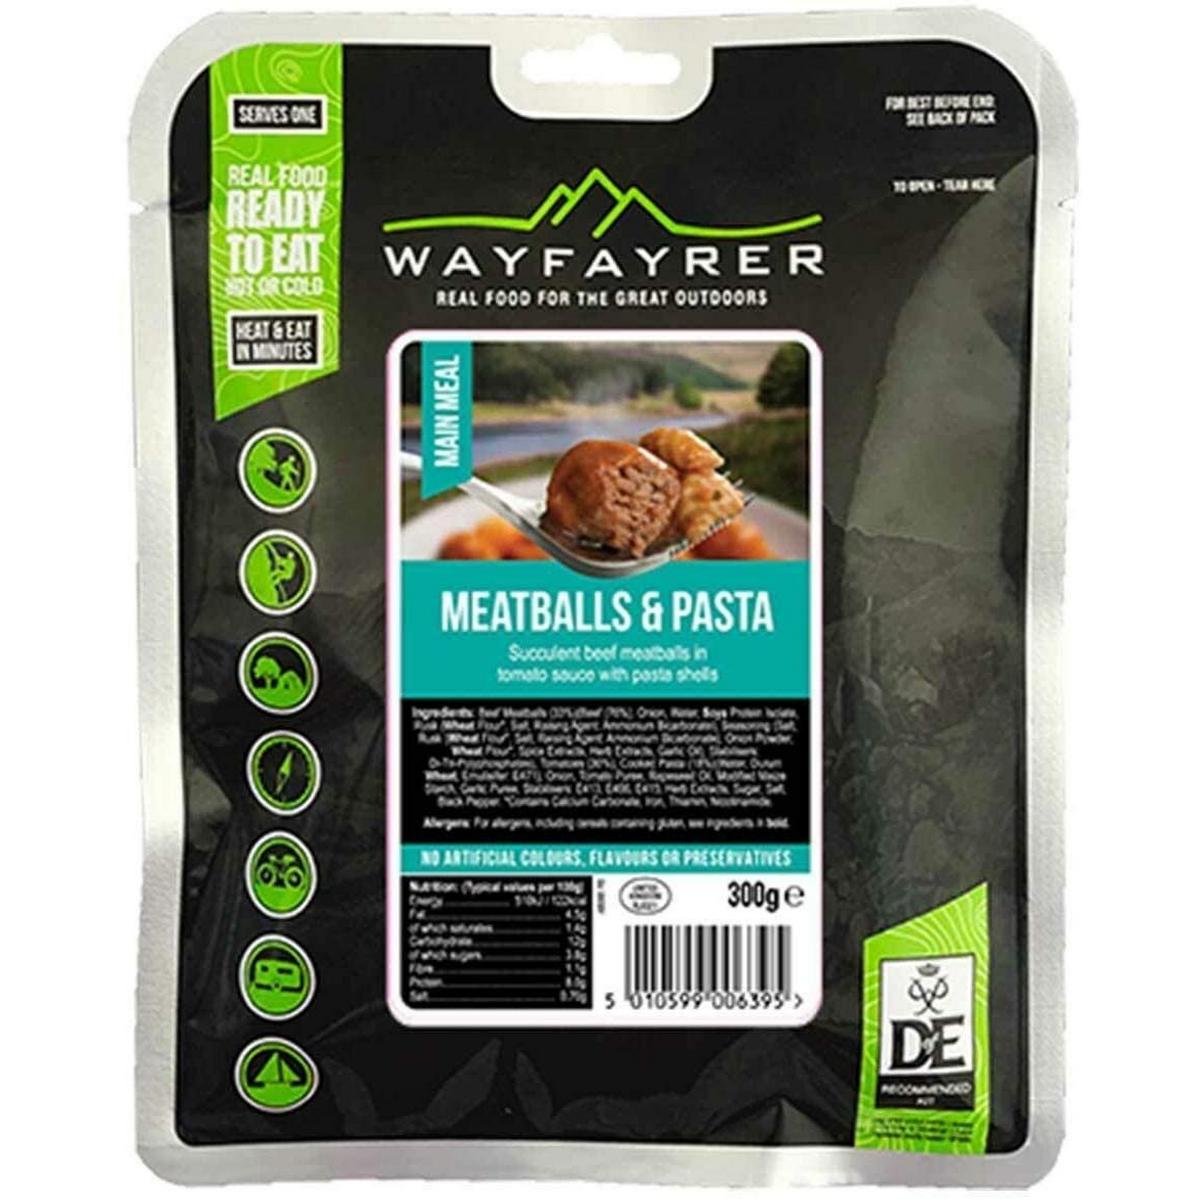 Wayfayrer Pasta and Meatballs